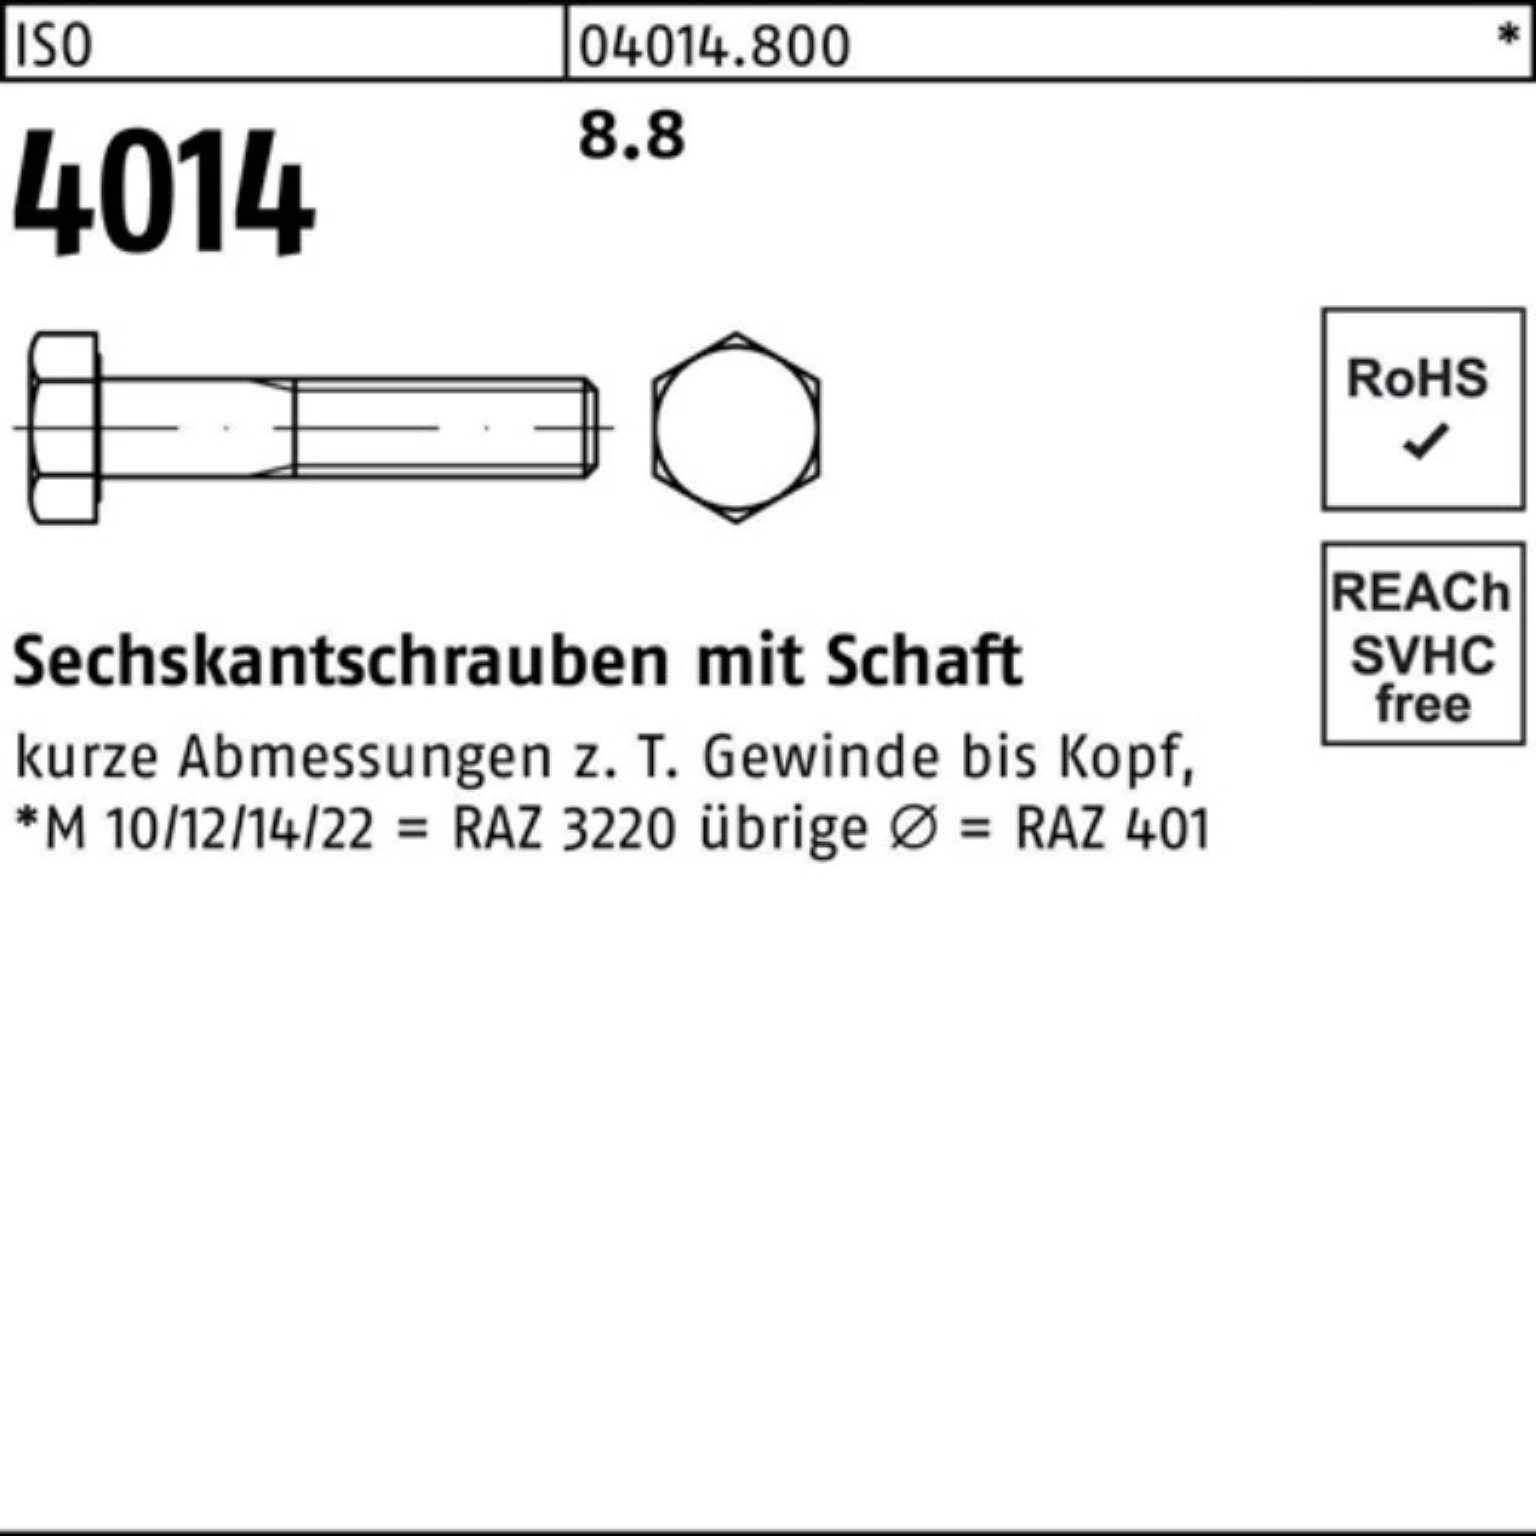 Bufab Sechskantschraube 4014 Sechskantschraube 1 ISO M42x Pack 100er Stück 8.8 400 Schaft ISO